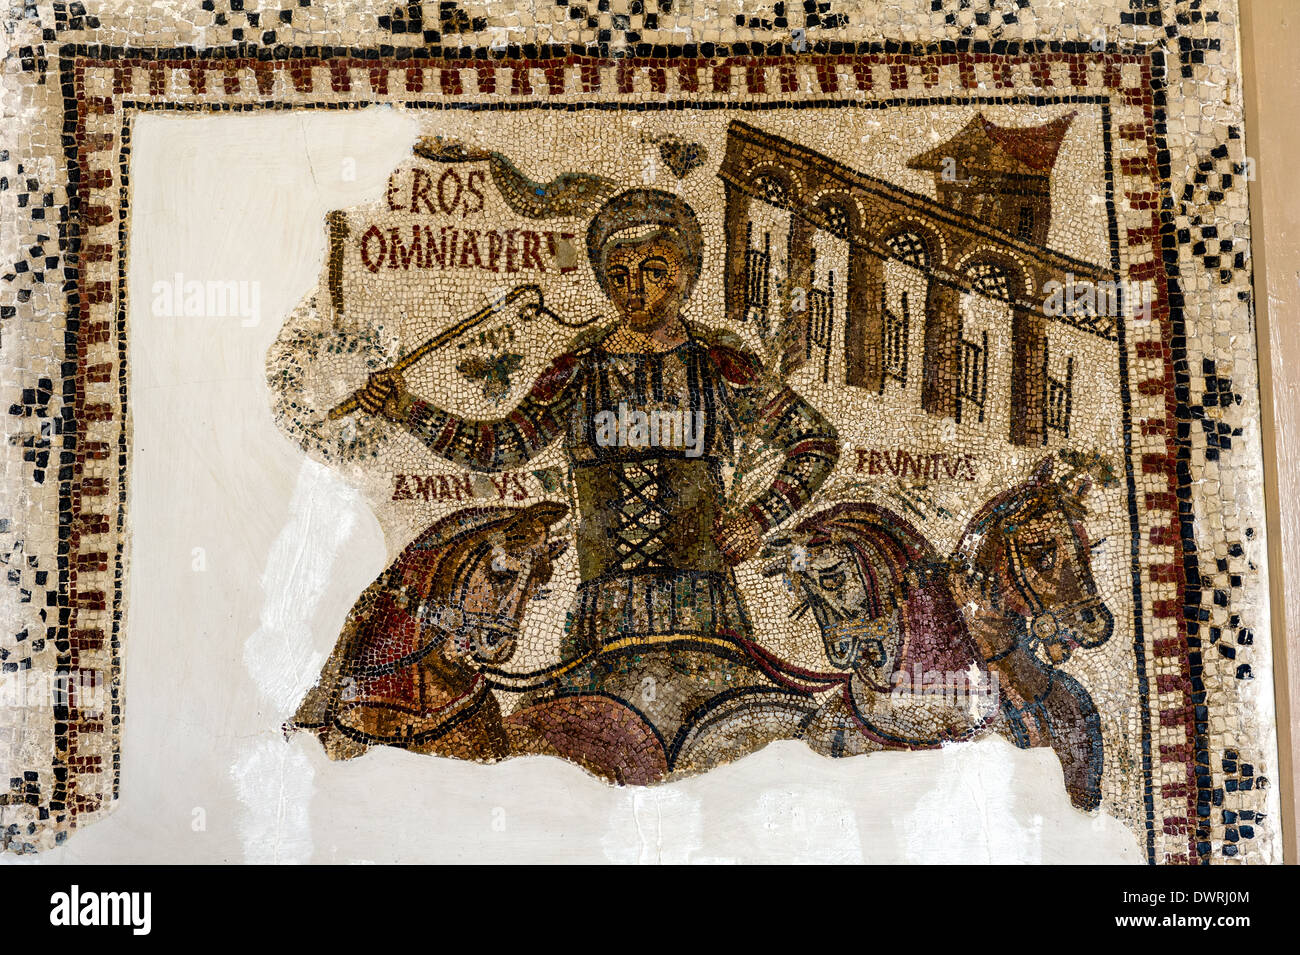 L'Afrique du Nord, Tunisie, Tunis. Le Musée du Bardo. Fresque romaine mosaïque. Attelage de chevaux. Fragment. Banque D'Images